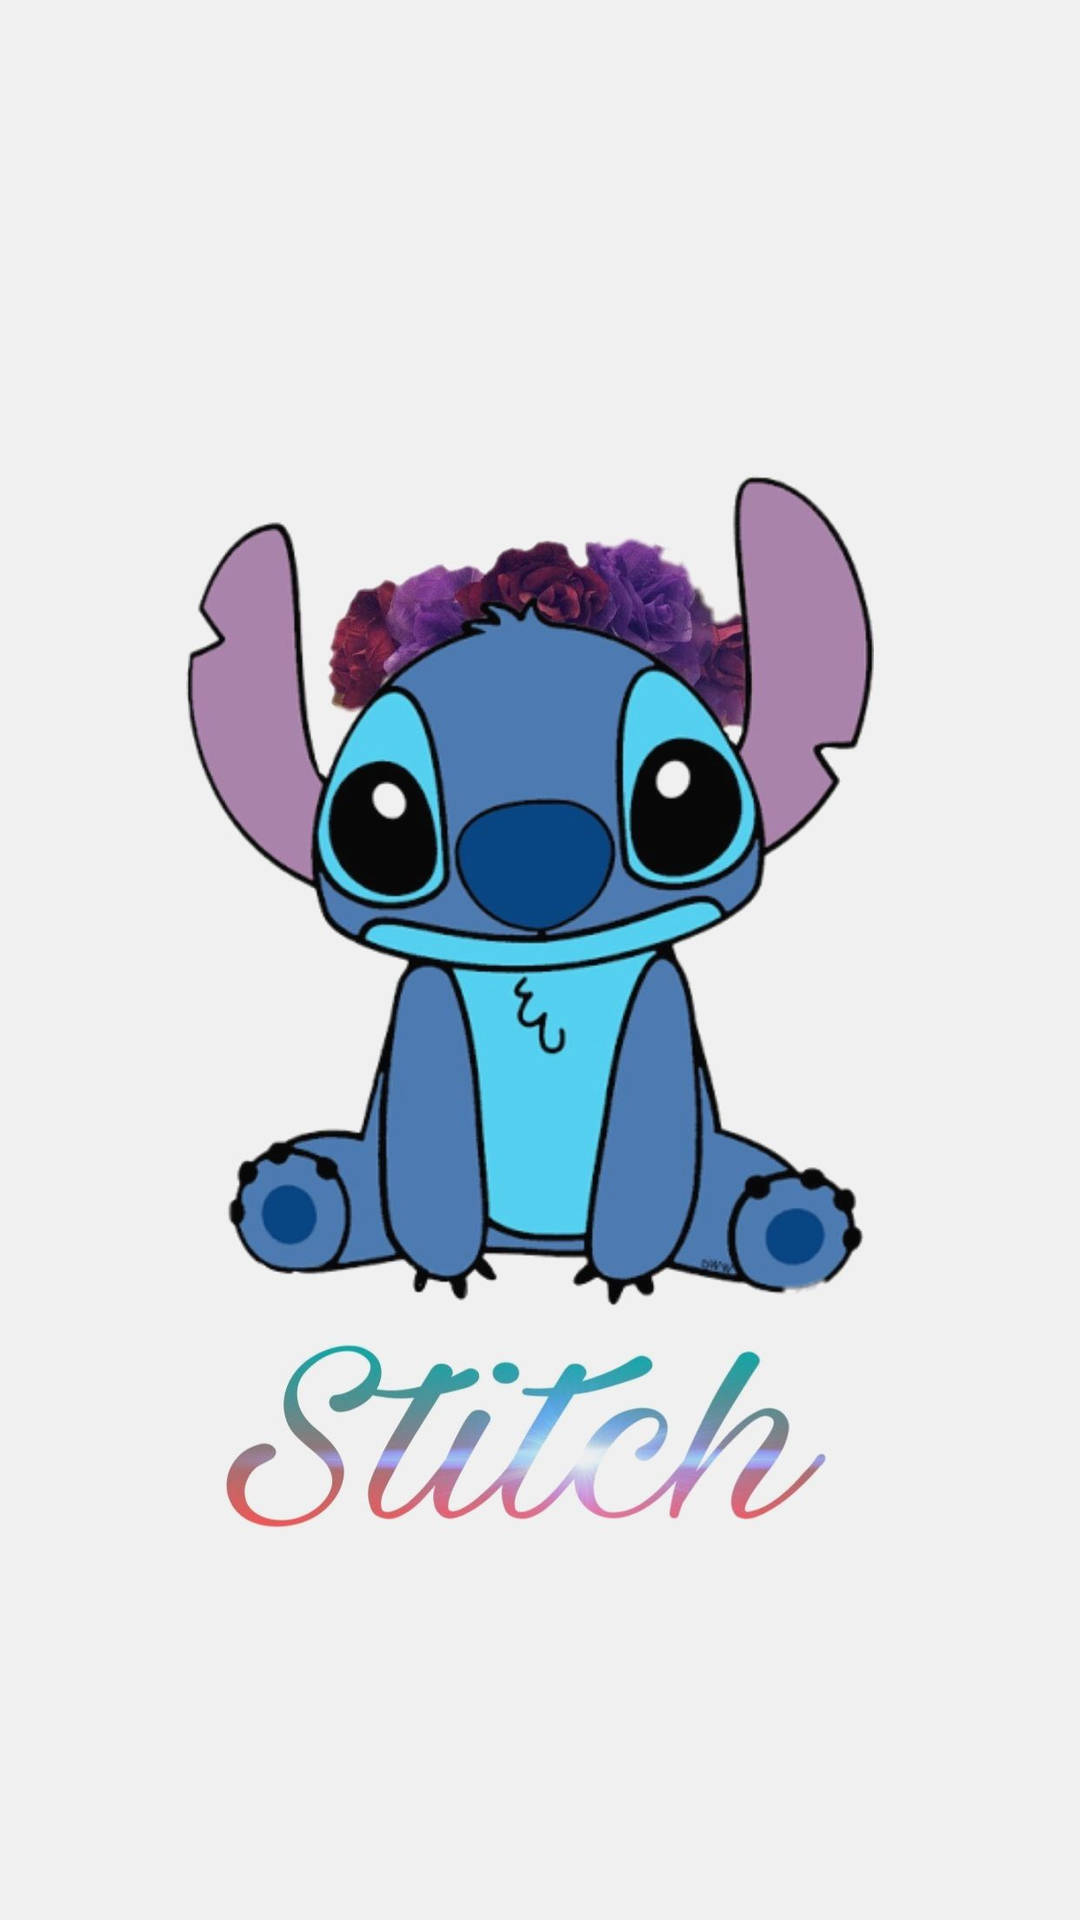 Cute Disney Stitch Flower Crown Background